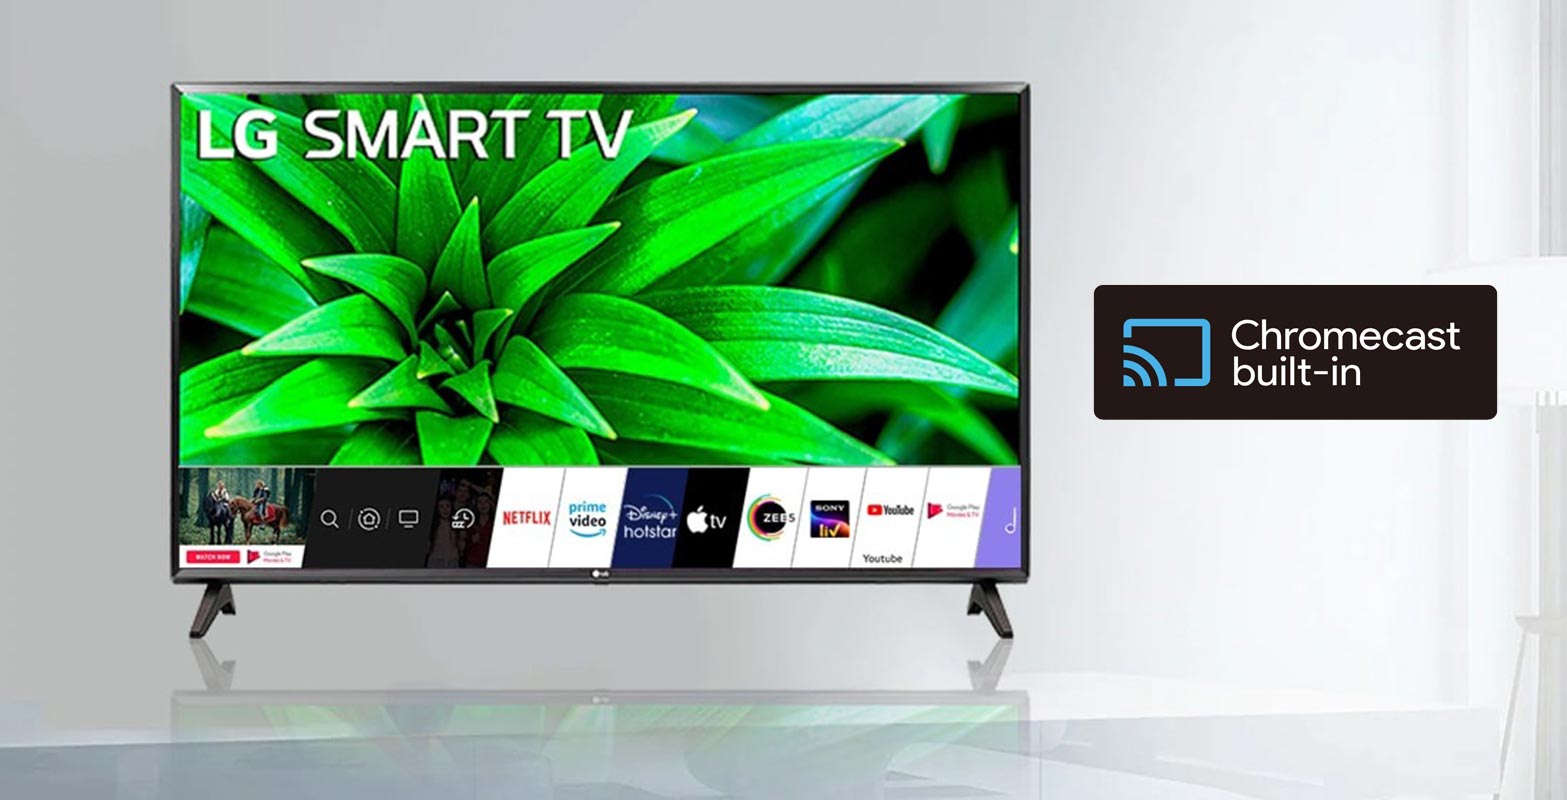 LG Smart TV Chromecast Built-In